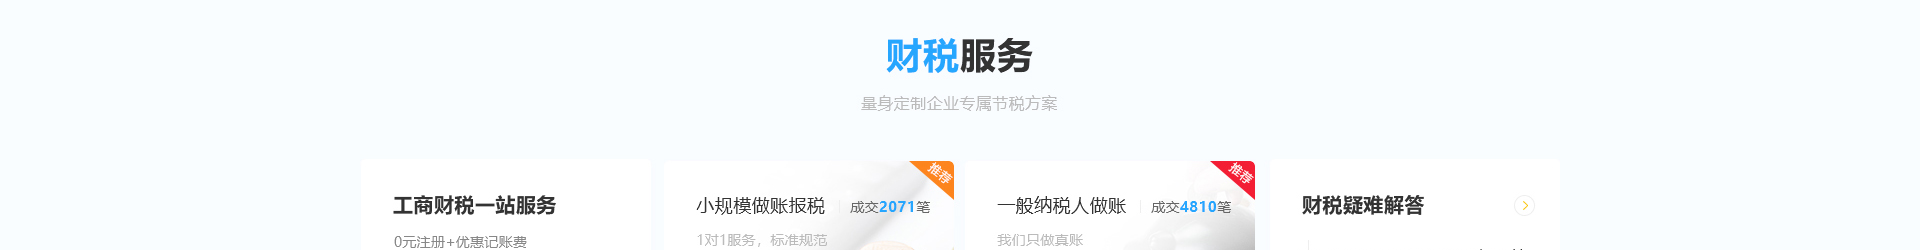 深圳市财通财务有限公司_企业网站设计案例_财税网站